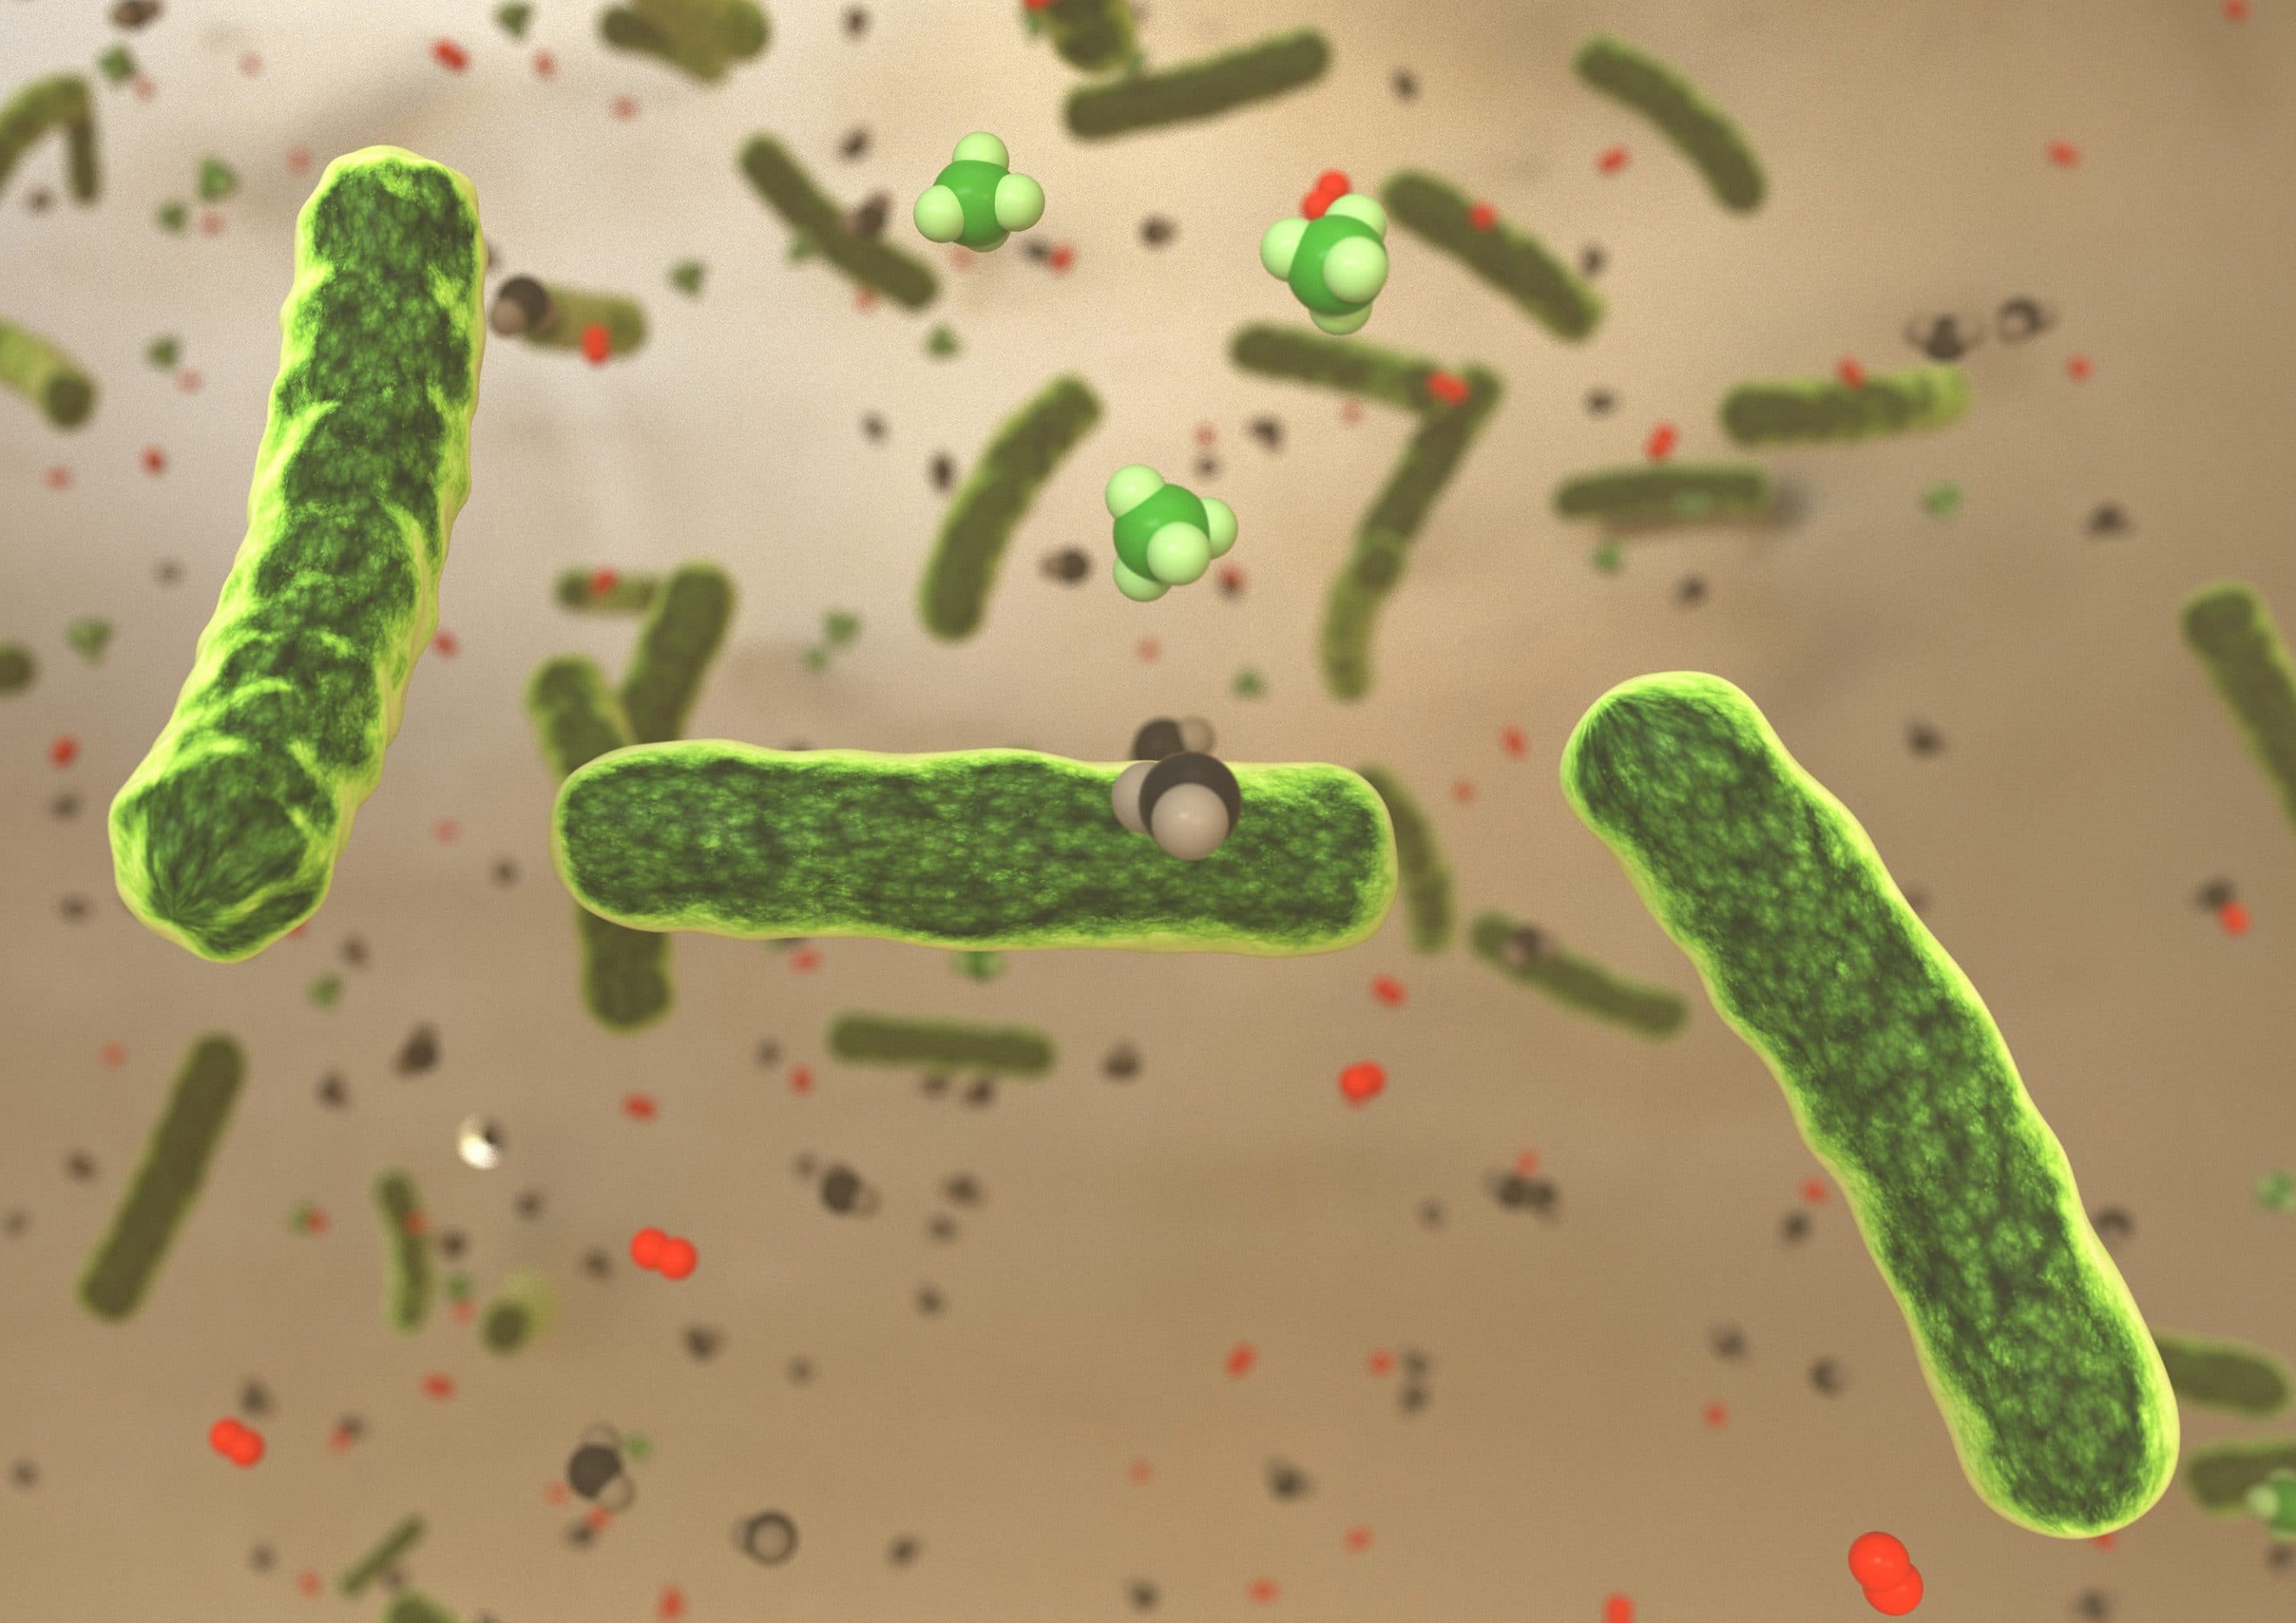 BiON®-Verfahren: Mikroorganismen verstoffwechseln H2 und CO2 zu Methan. Bild: microbEnergy